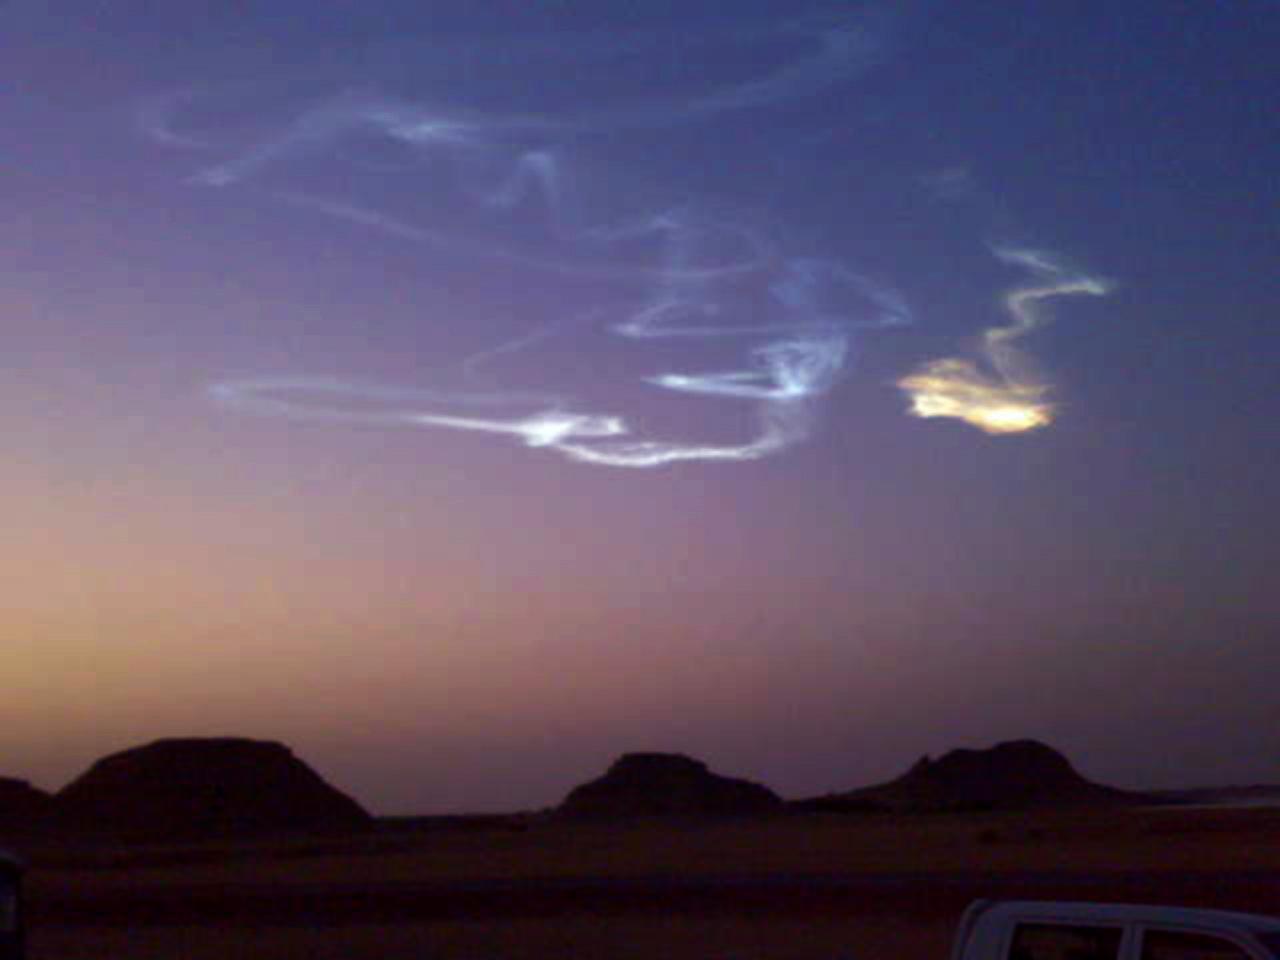 Trainée de lastéroïde 2008 TC3 photographiée à laube dans le ciel du nord du Soudan